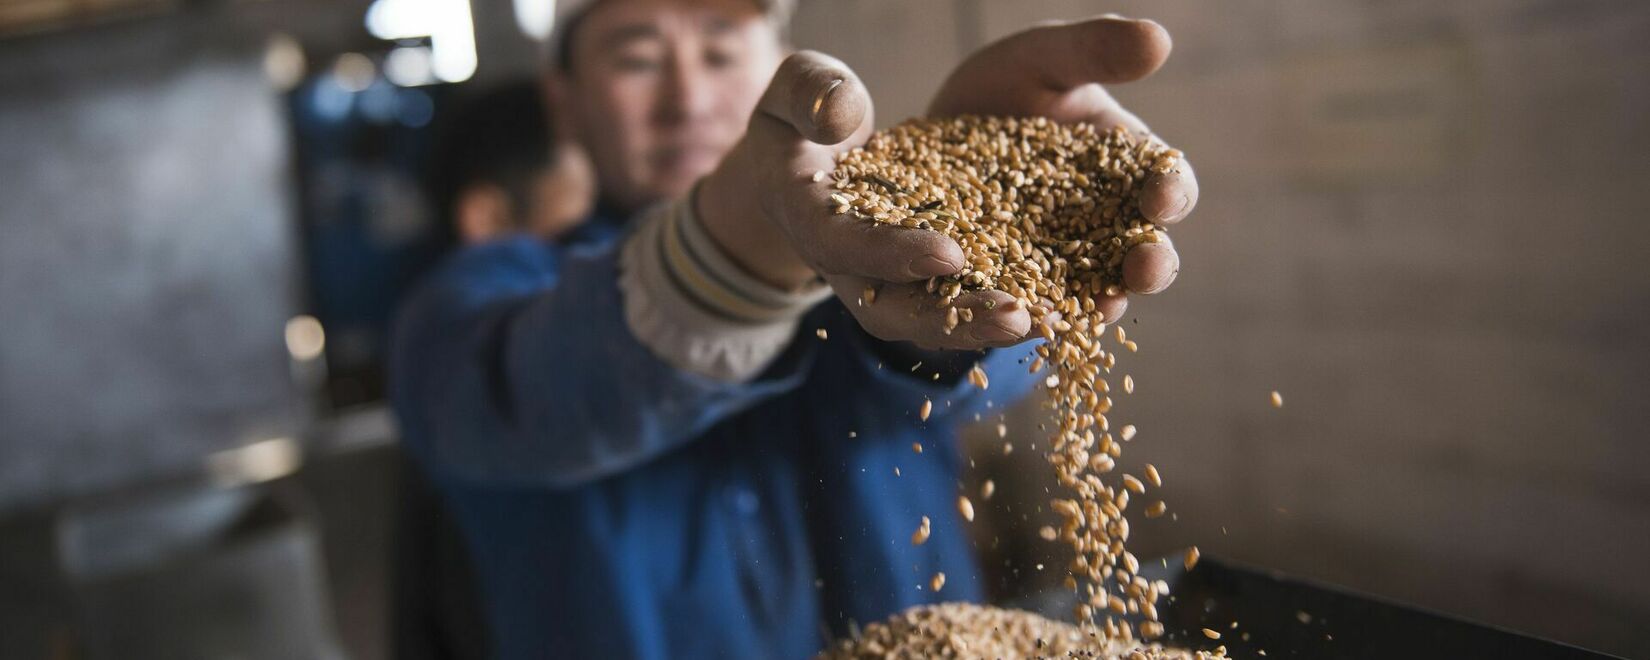 Из-за аномально высоких температур валовой сбор пшеницы в Кыргызстане сократился на 26,5%